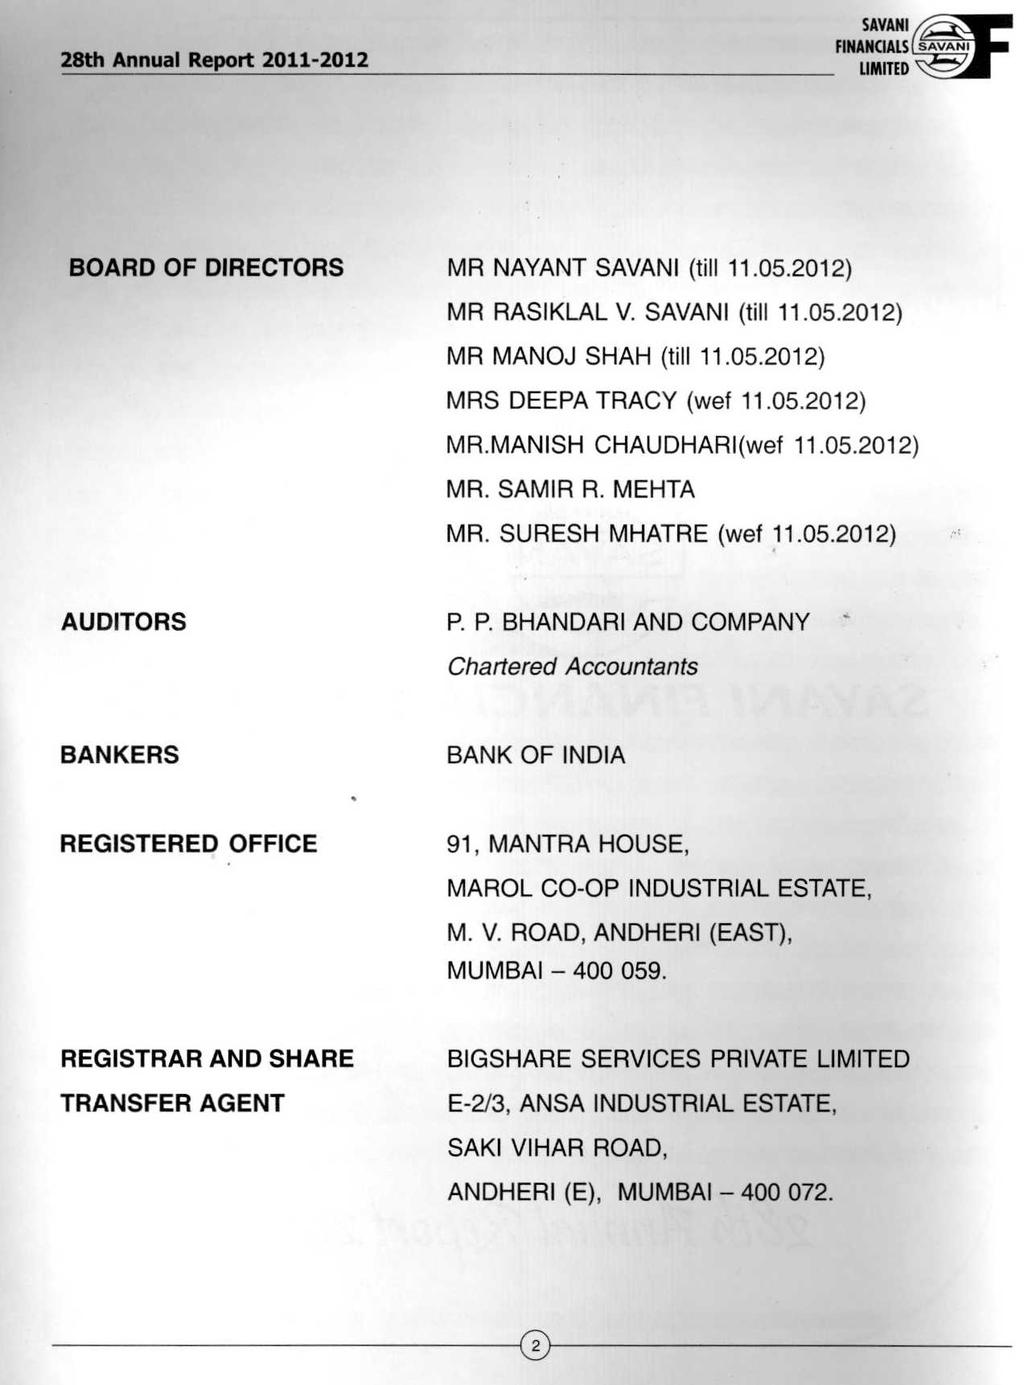 BOARD OF DIRECTORS MR NAYANT (till 11.05.2012) MR RASIKLAL V. (till 11.05.2012) MR MANOJ SHAH (till 11.05.2012) MRS DEEPA TRACY (wef 11.05.2012) MR.MANISH CHAUDHARI(wef 11.05.2012) MR. SAMIR R.